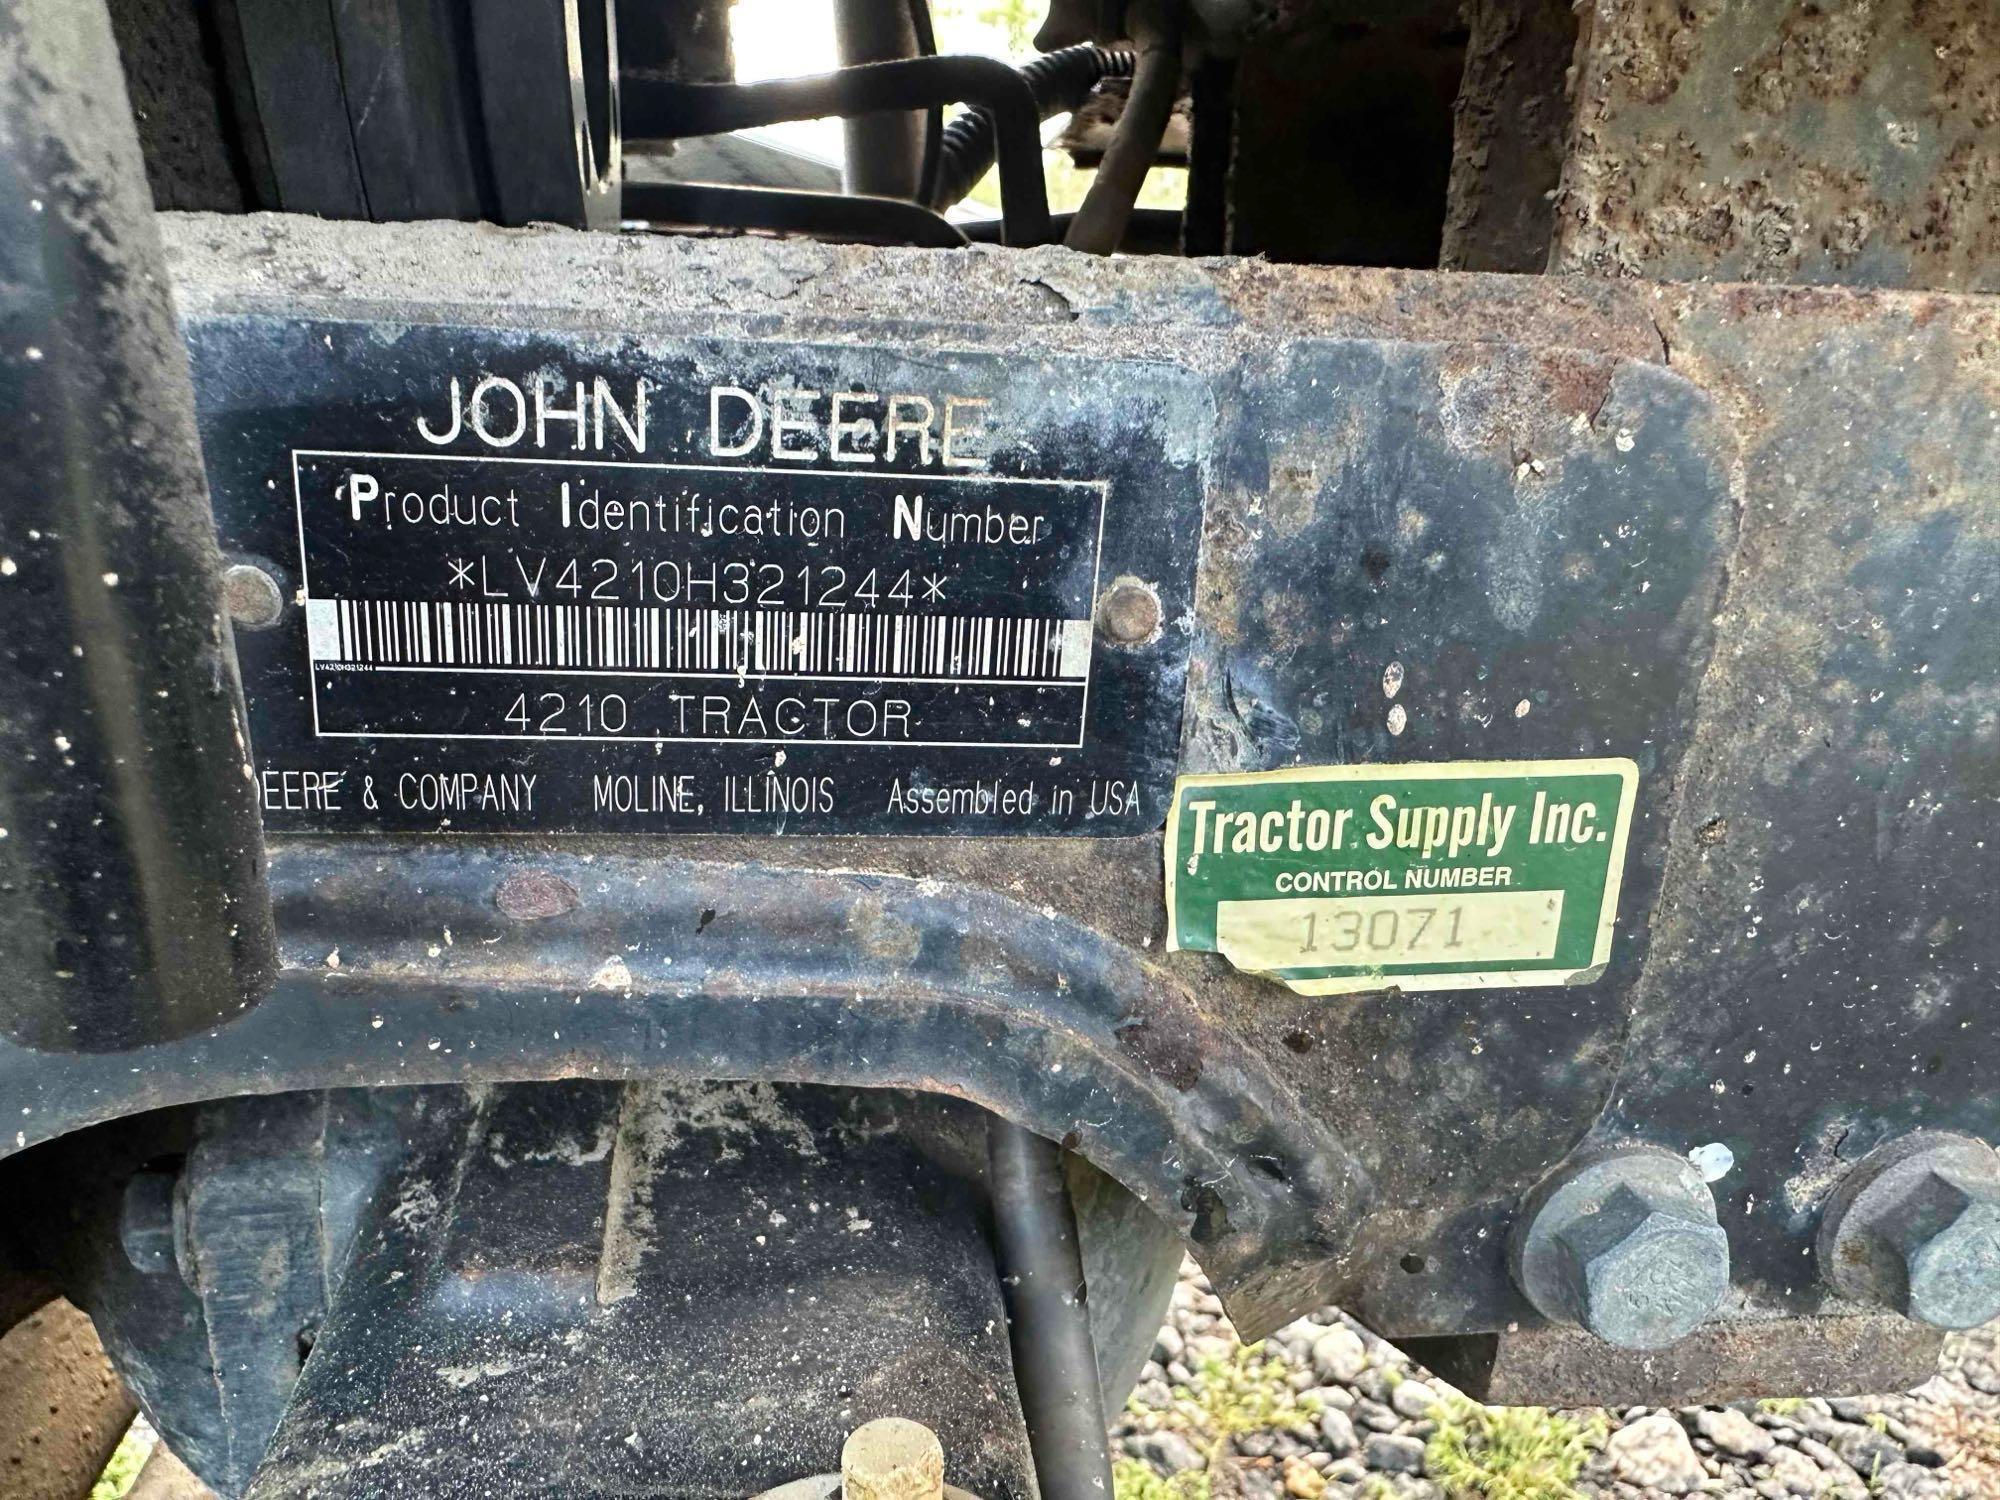 JOHN DEERE 4210 4WD TRACTOR W/ LOADER